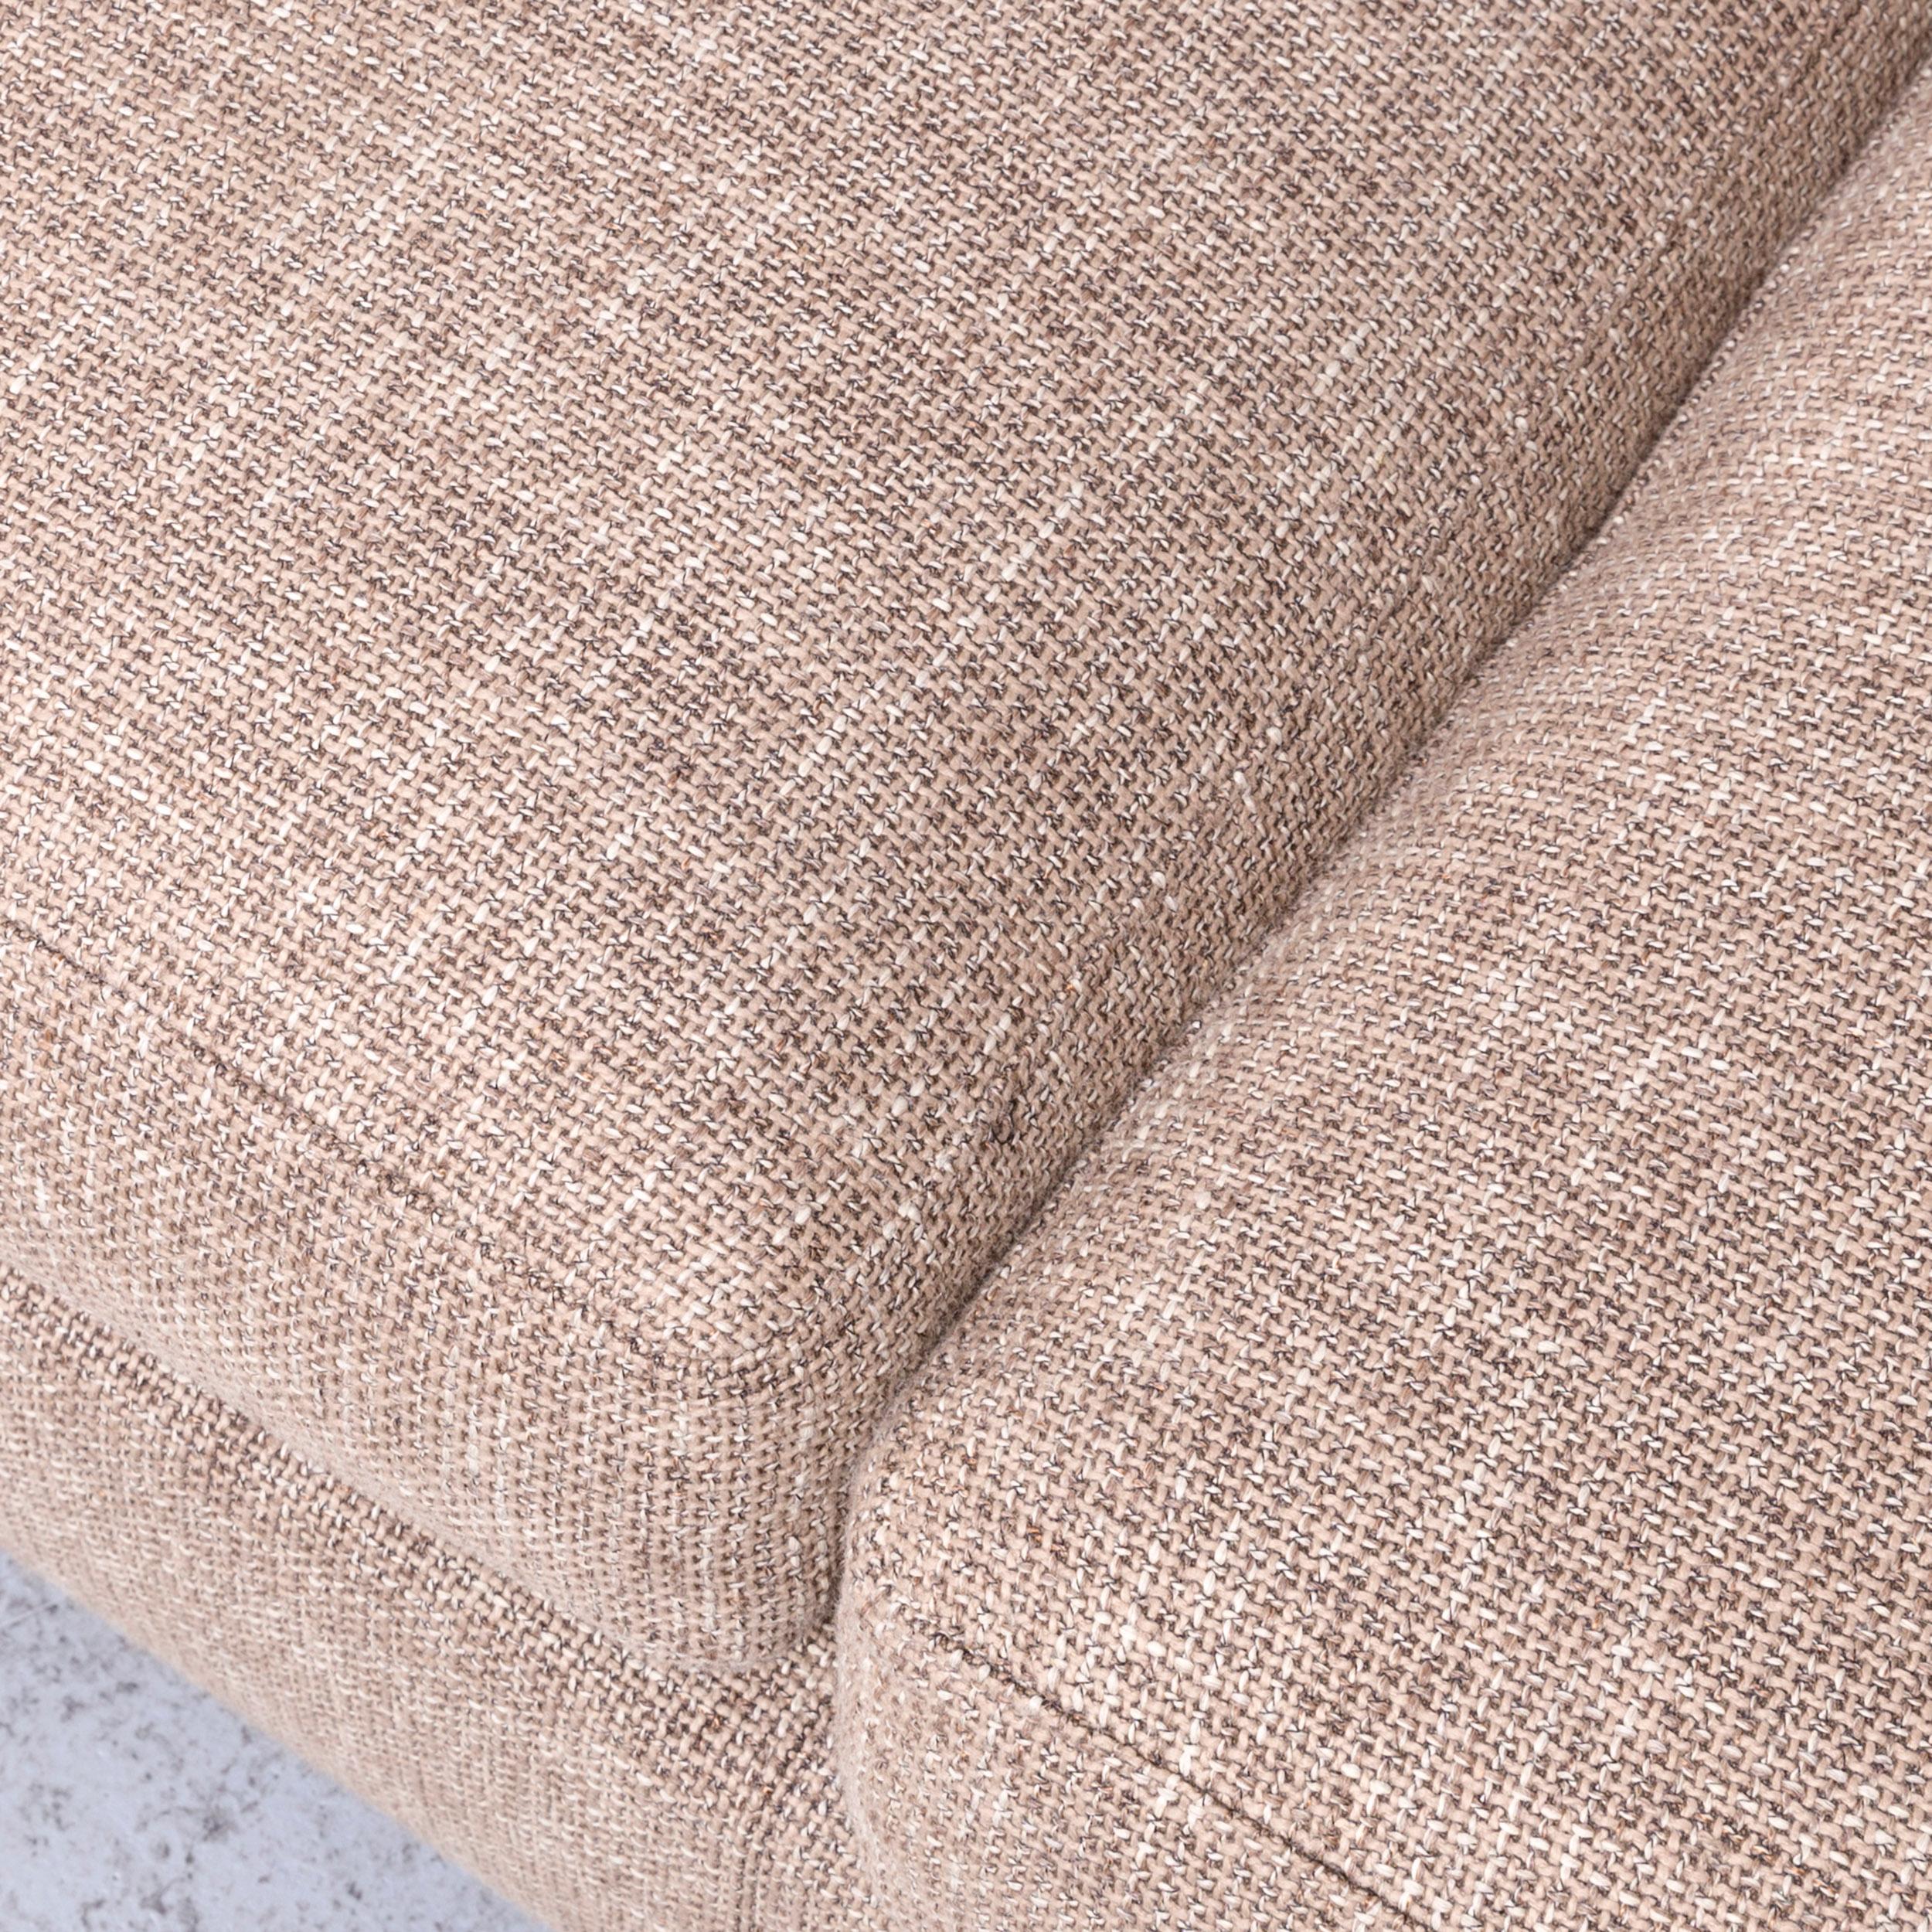 Minotti Hilton Designer Fabric Sofa Brown Corner Couch In Excellent Condition For Sale In Cologne, DE